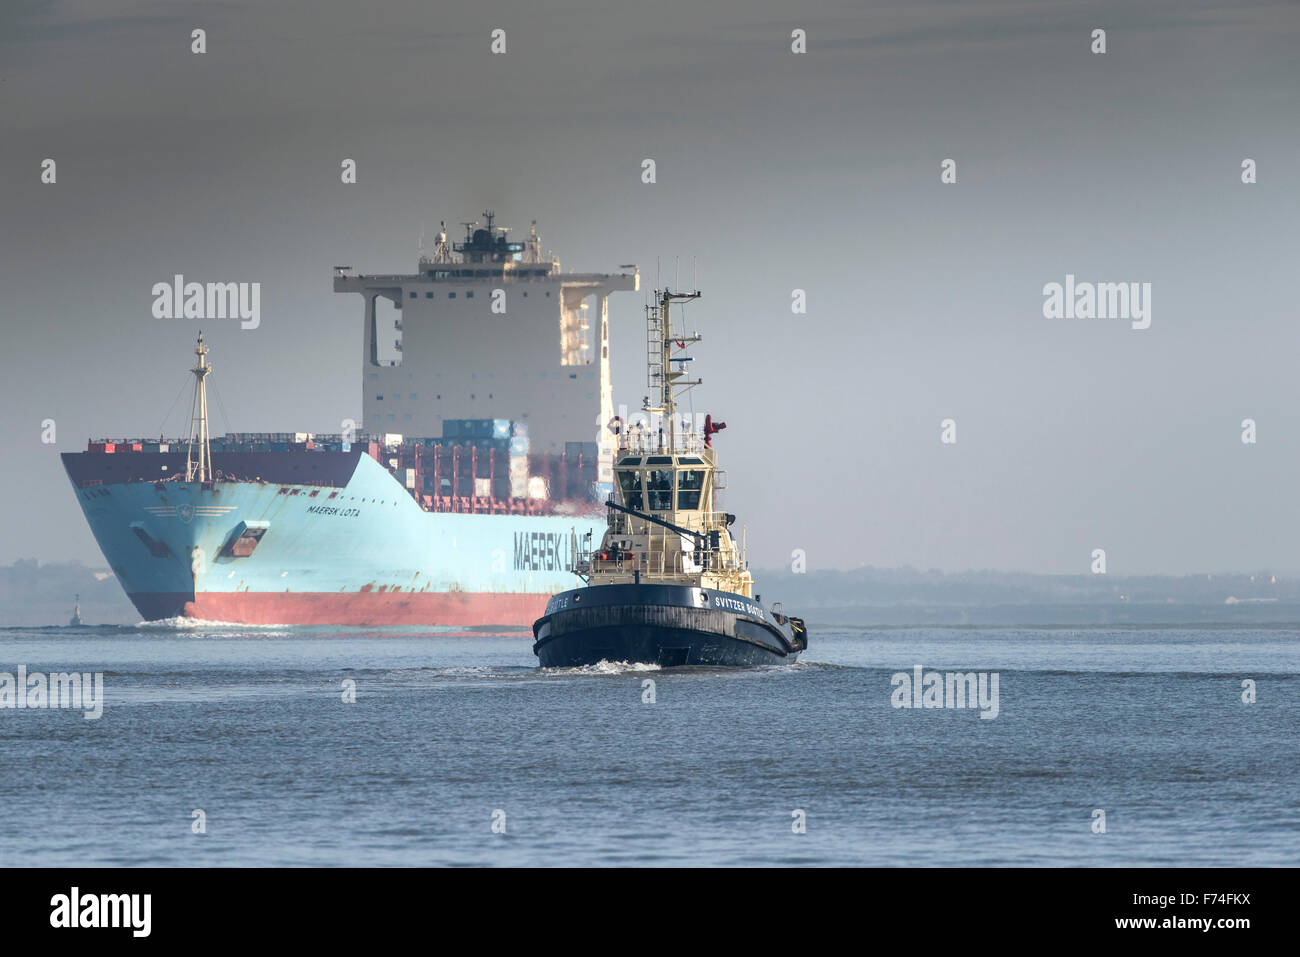 Der Schlepper Svitzer Bootle begleitet das Containerschiff Maersk Lota, wie sie flussaufwärts auf der Themse dampft. Stockfoto